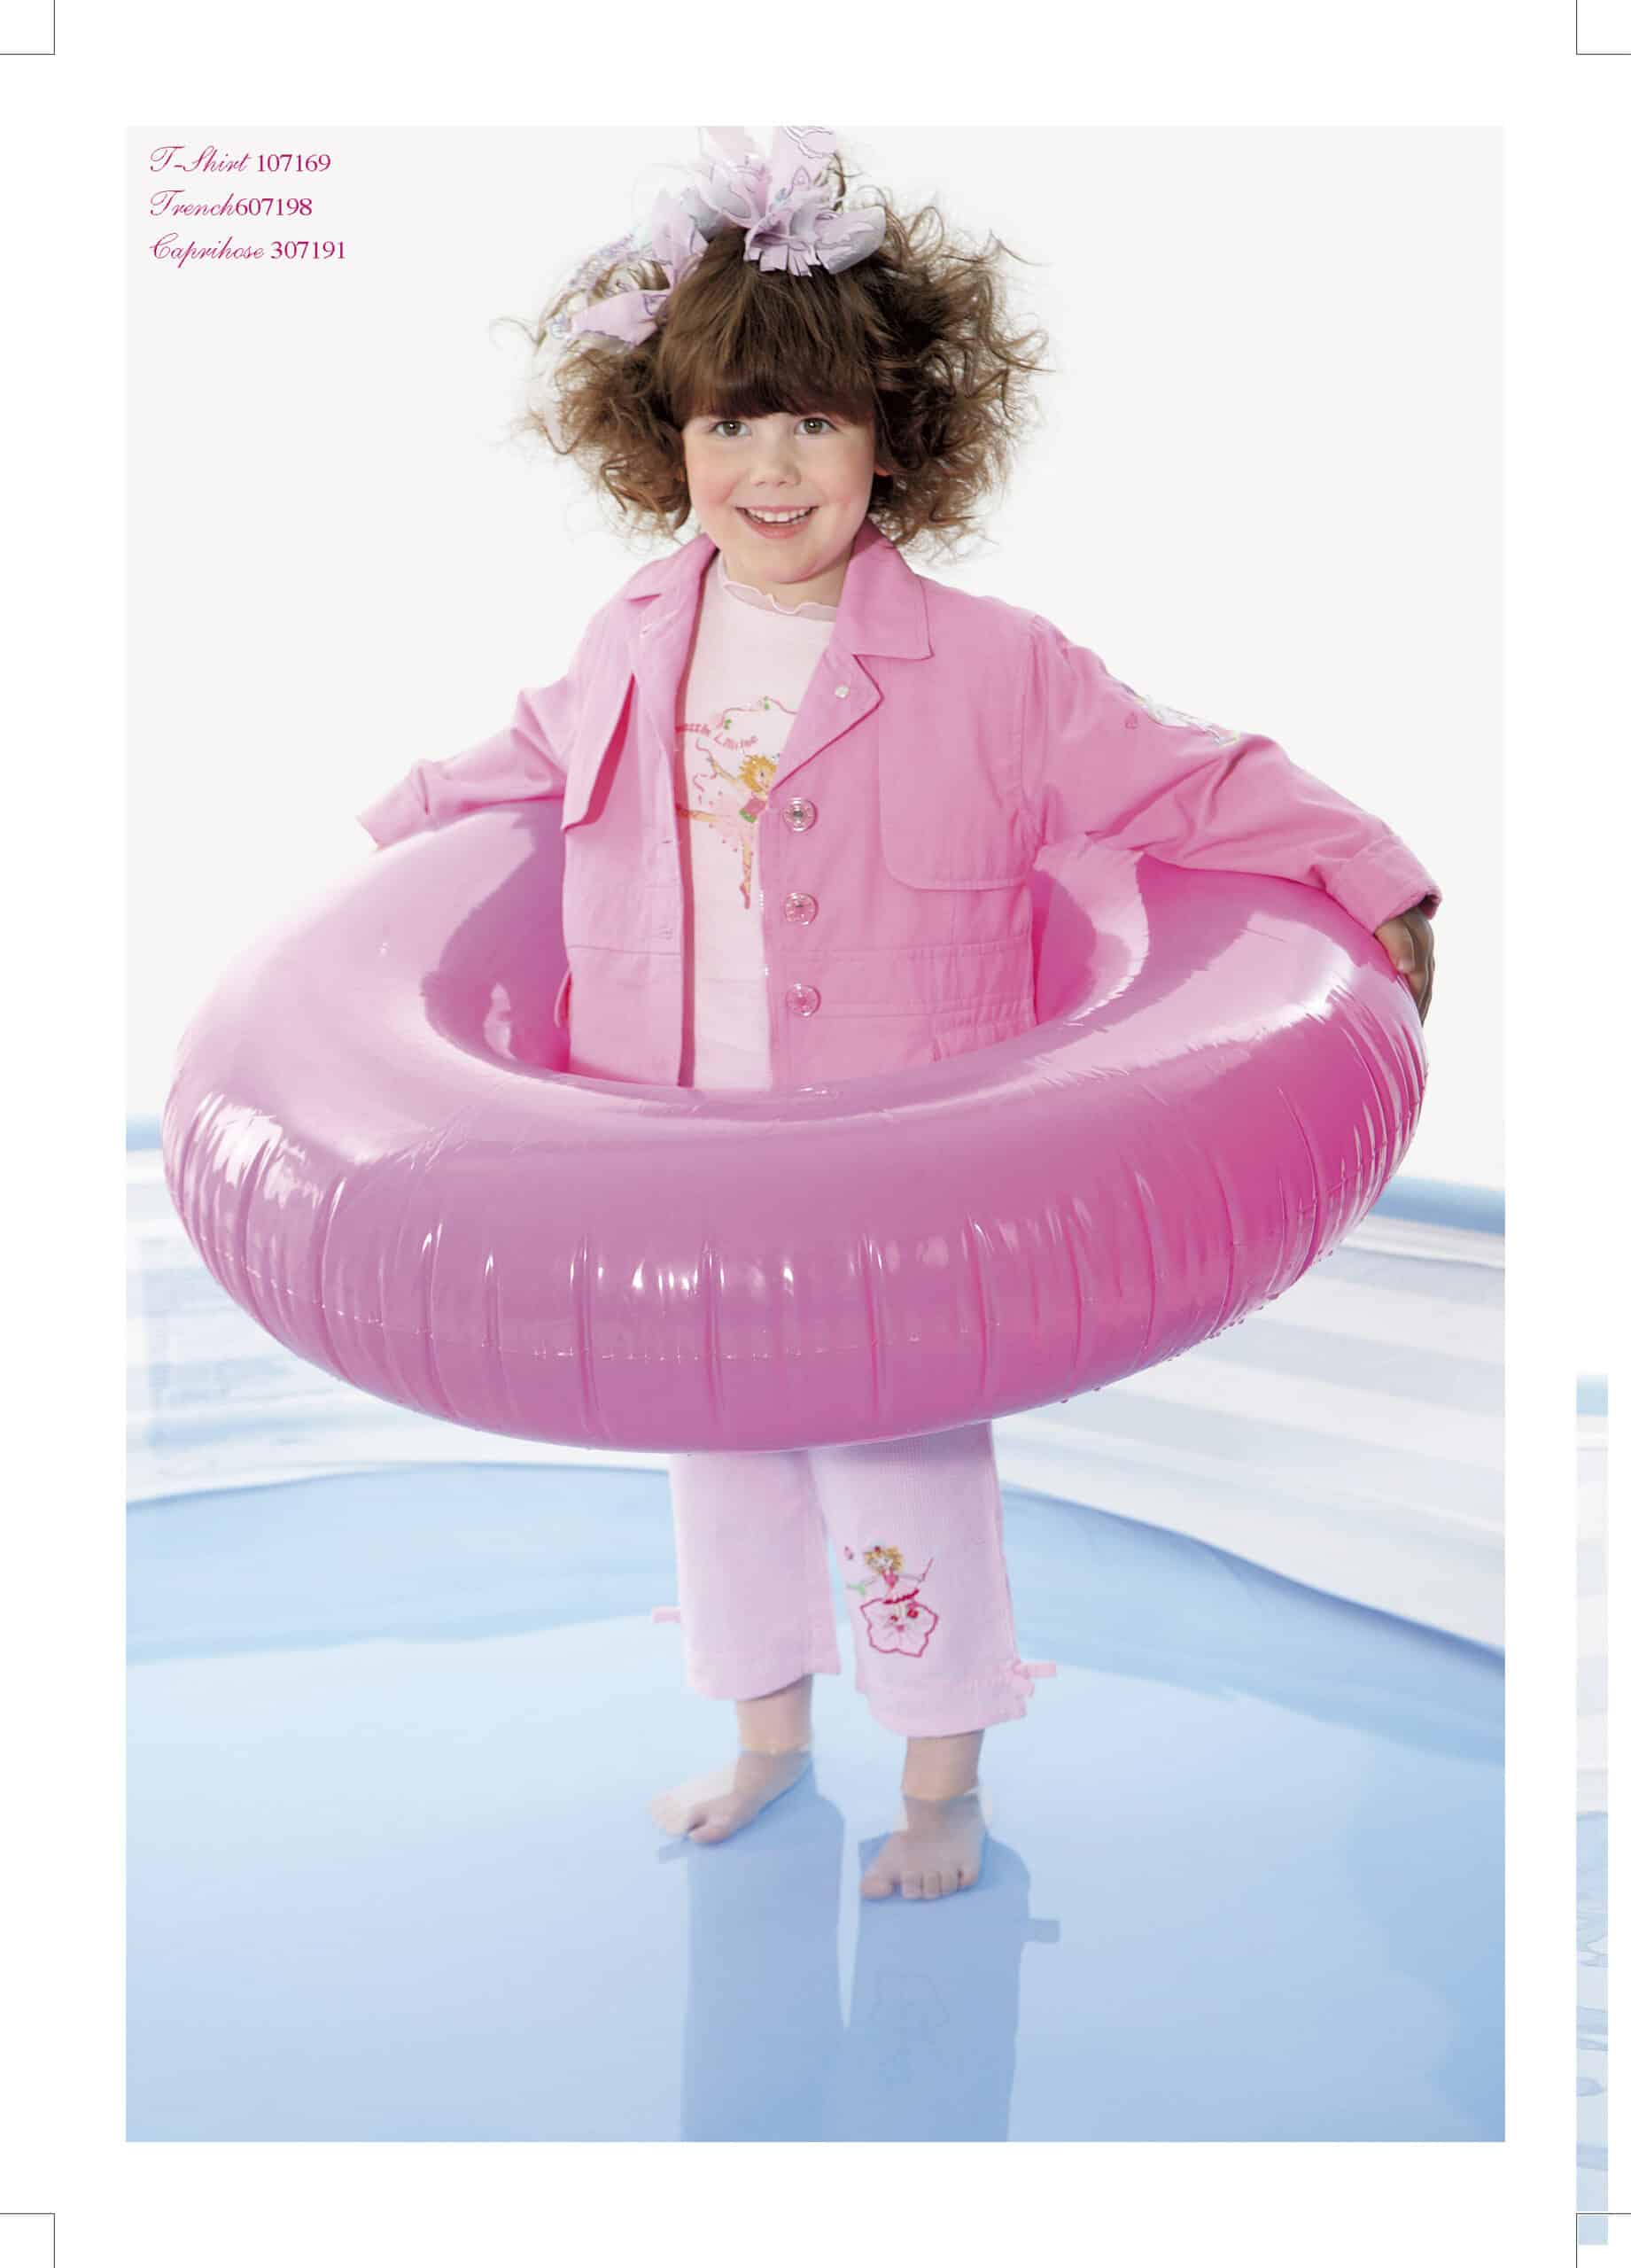 Ein junges Mädchen in rosa Jacke und Hose steht lächelnd in einem flachen Pool, trägt einen rosa aufblasbaren Ring um die Hüfte und hat lockiges braunes Haar. Als Accessoire trägt sie eine große rosa Blume. © Fotografie Tomas Rodriguez